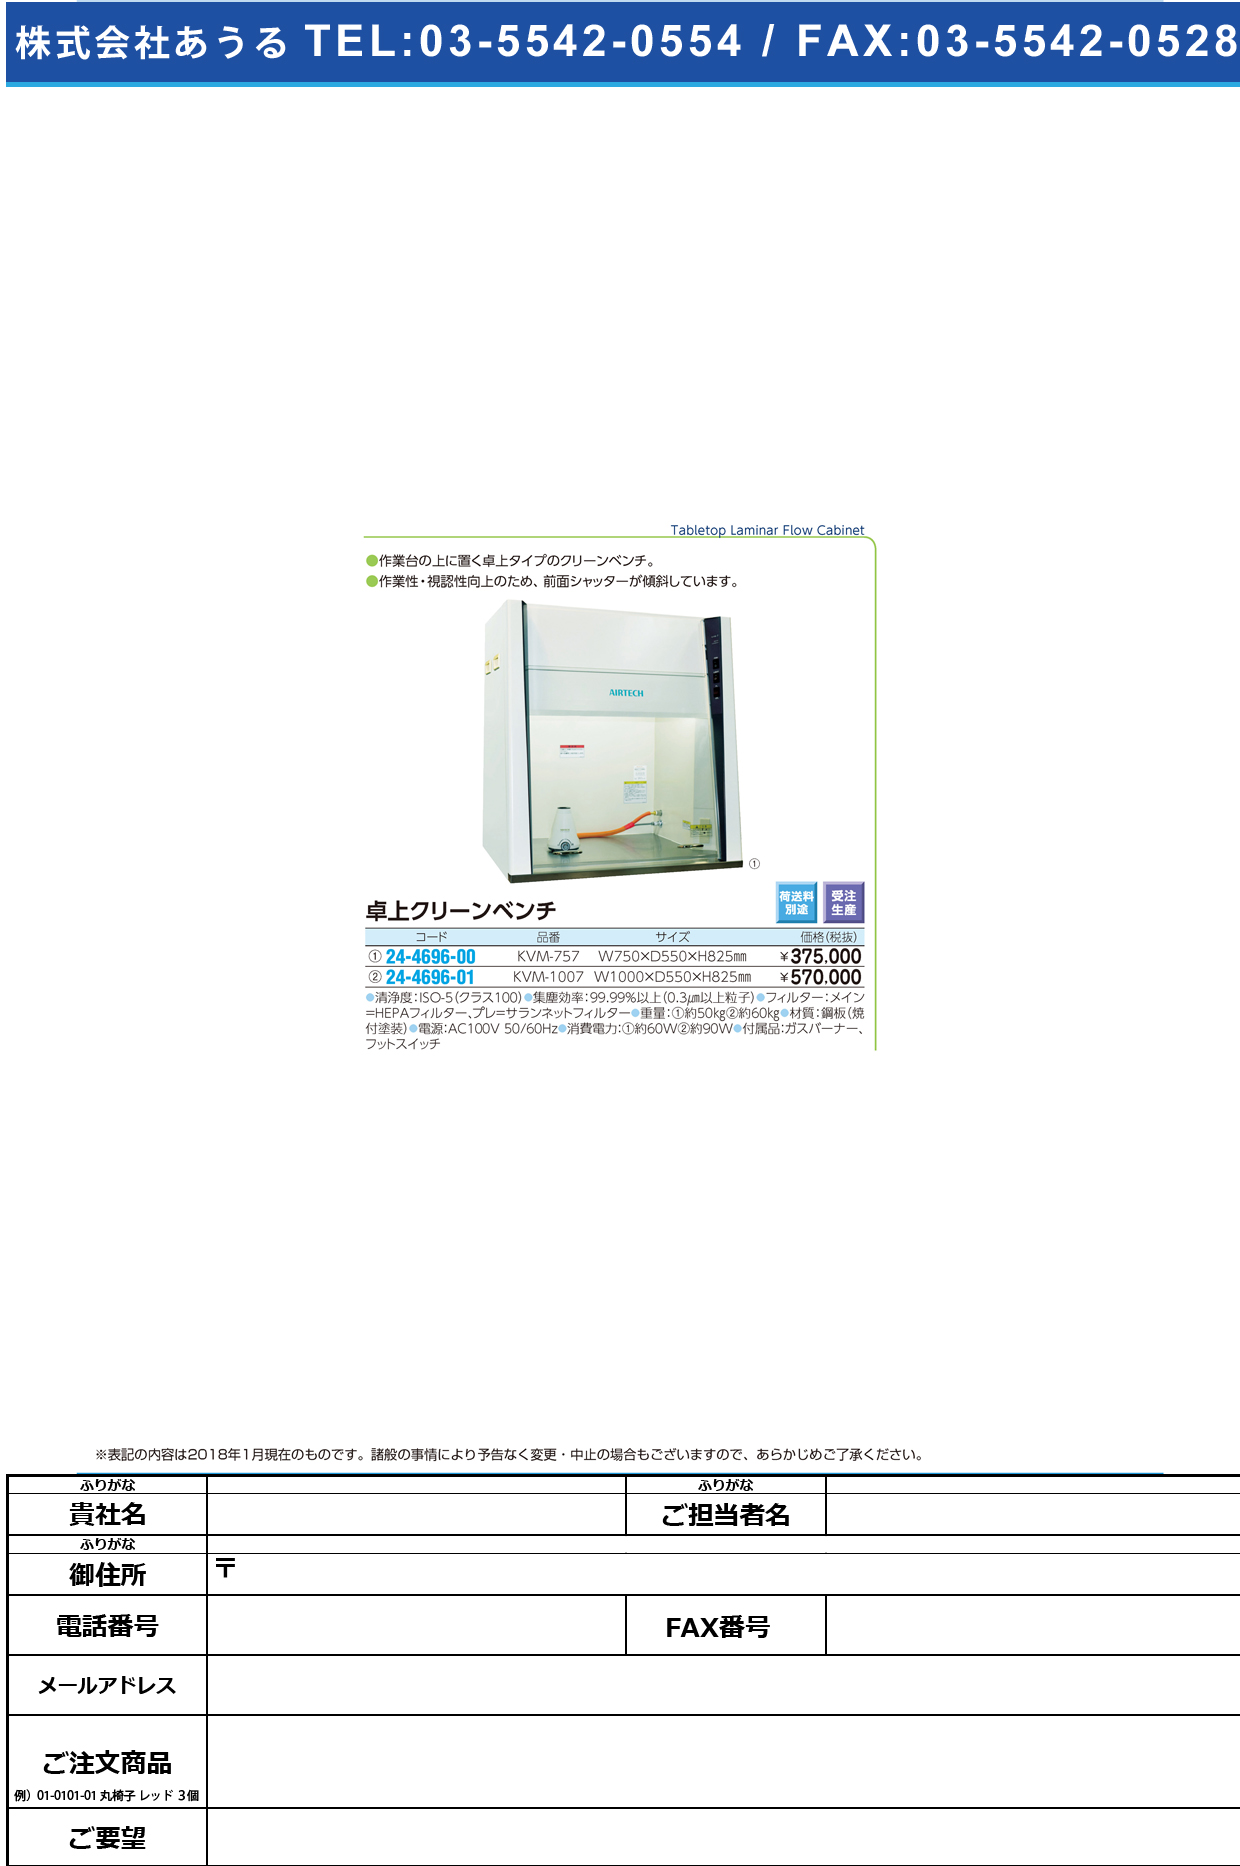 (24-4696-01)卓上クリーンベンチ KVM-1007 ﾀｸｼﾞｮｳｸﾘｰﾝﾍﾞﾝﾁ【1台単位】【2019年カタログ商品】